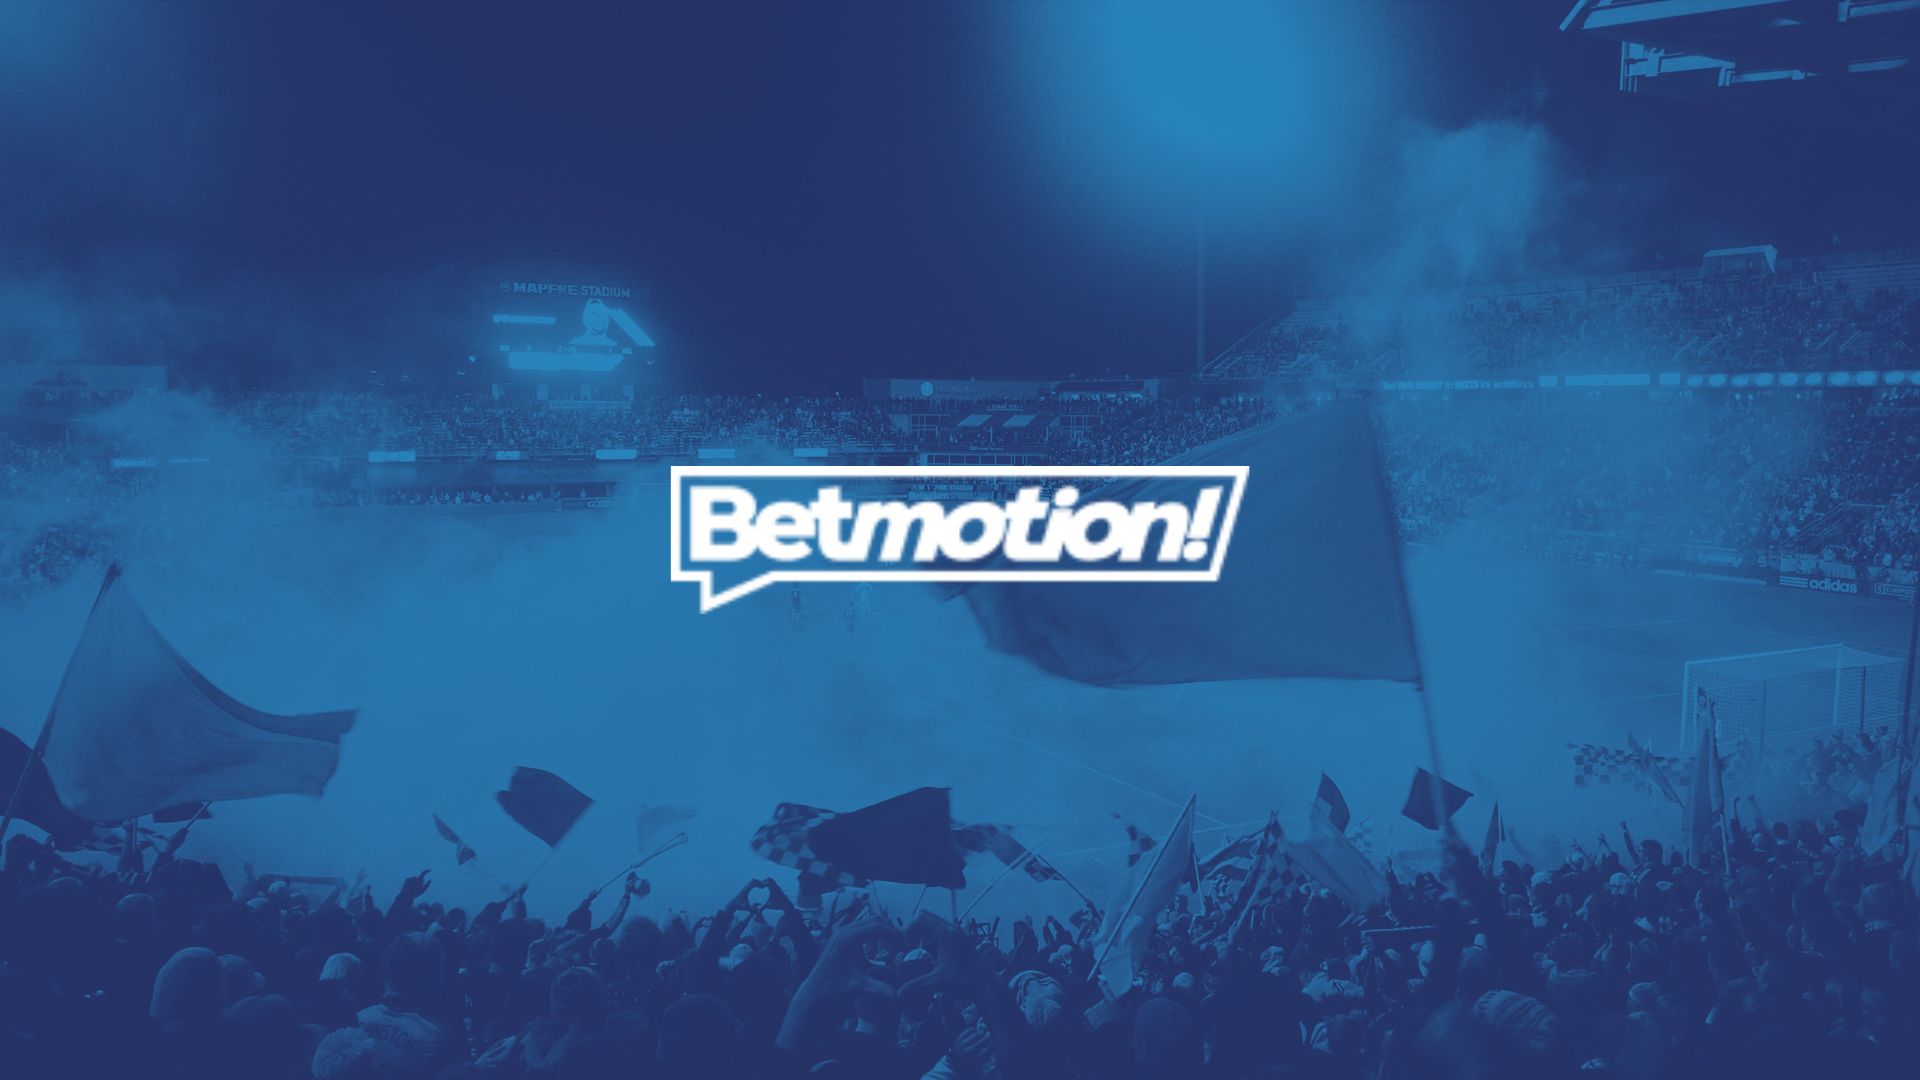 Betmotion BR: Passo a passo para ganhar nas apostas esportivas